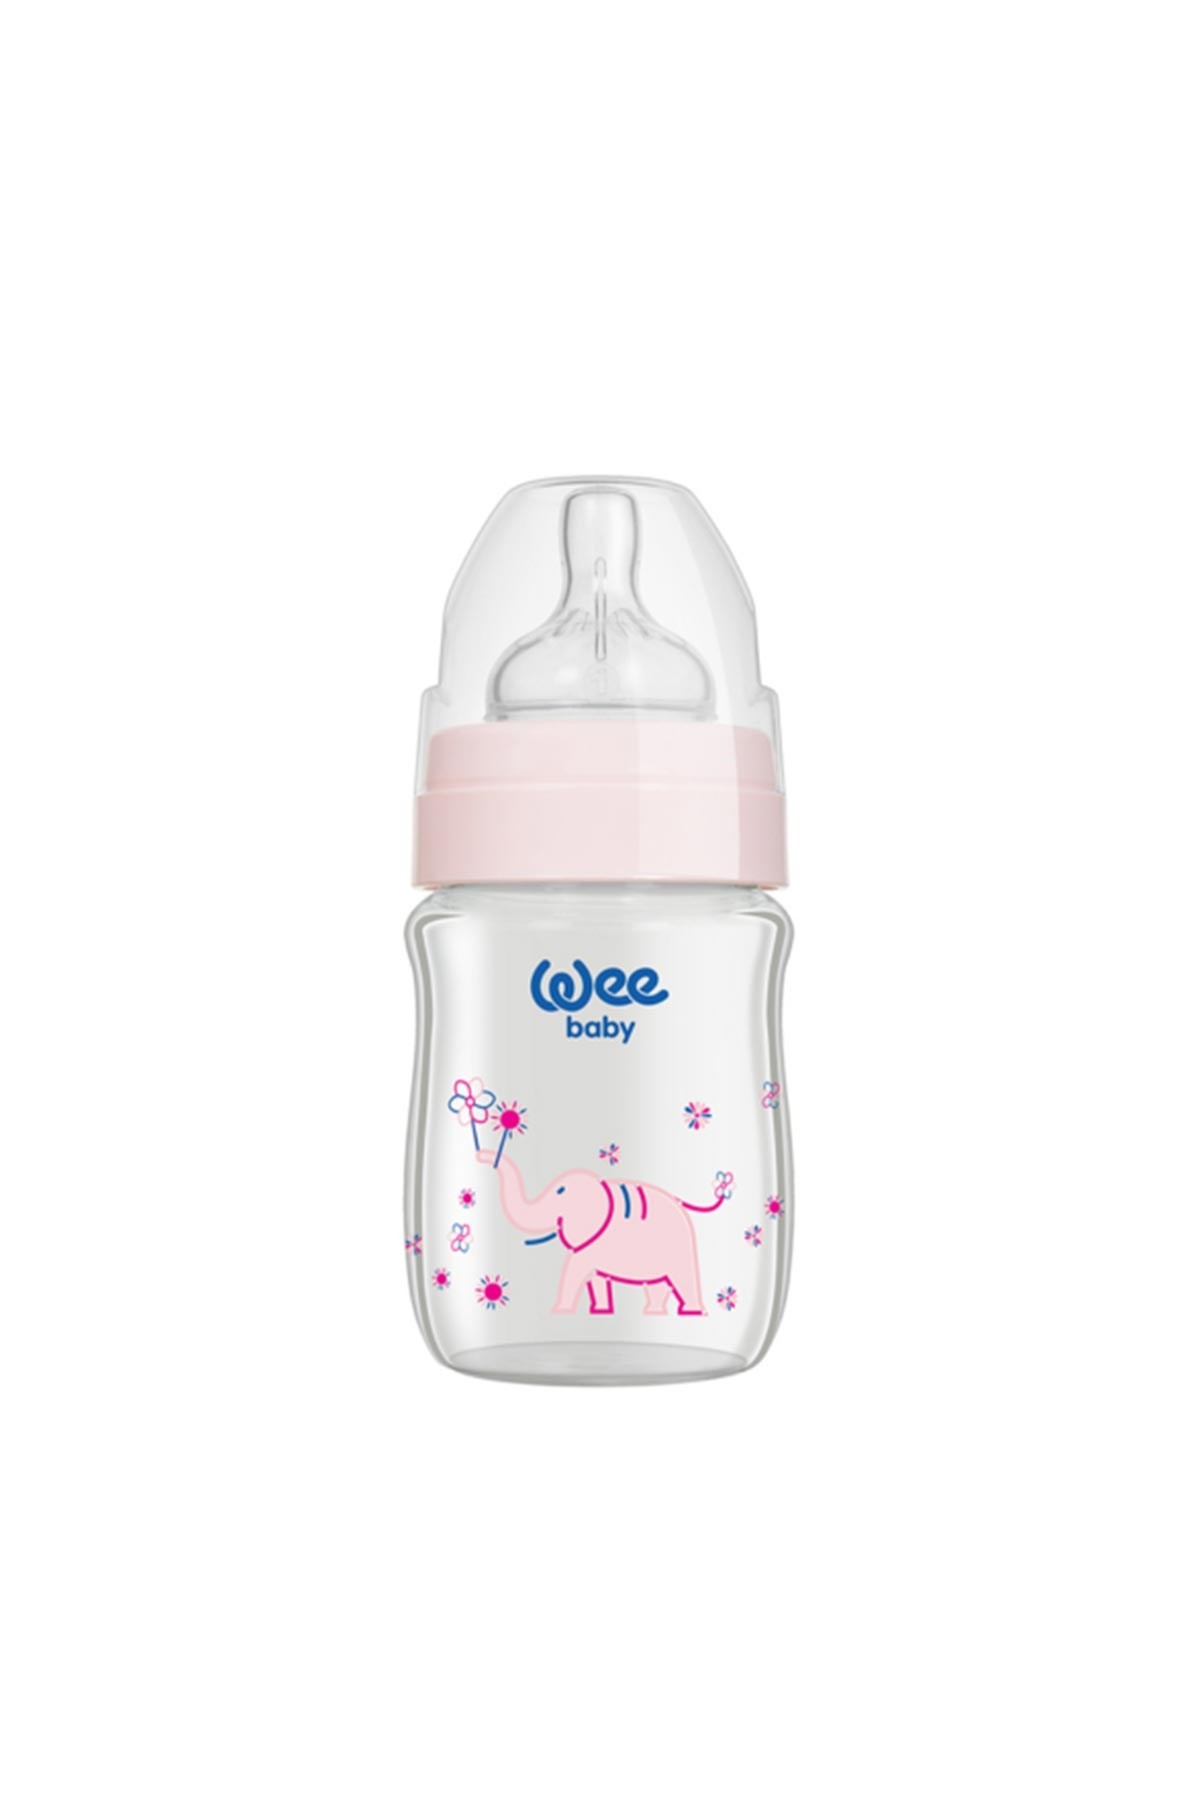 Wee Baby Klasik Plus Geniş Ağızlı Isıya Dayanıklı Cam Biberon 120 ml